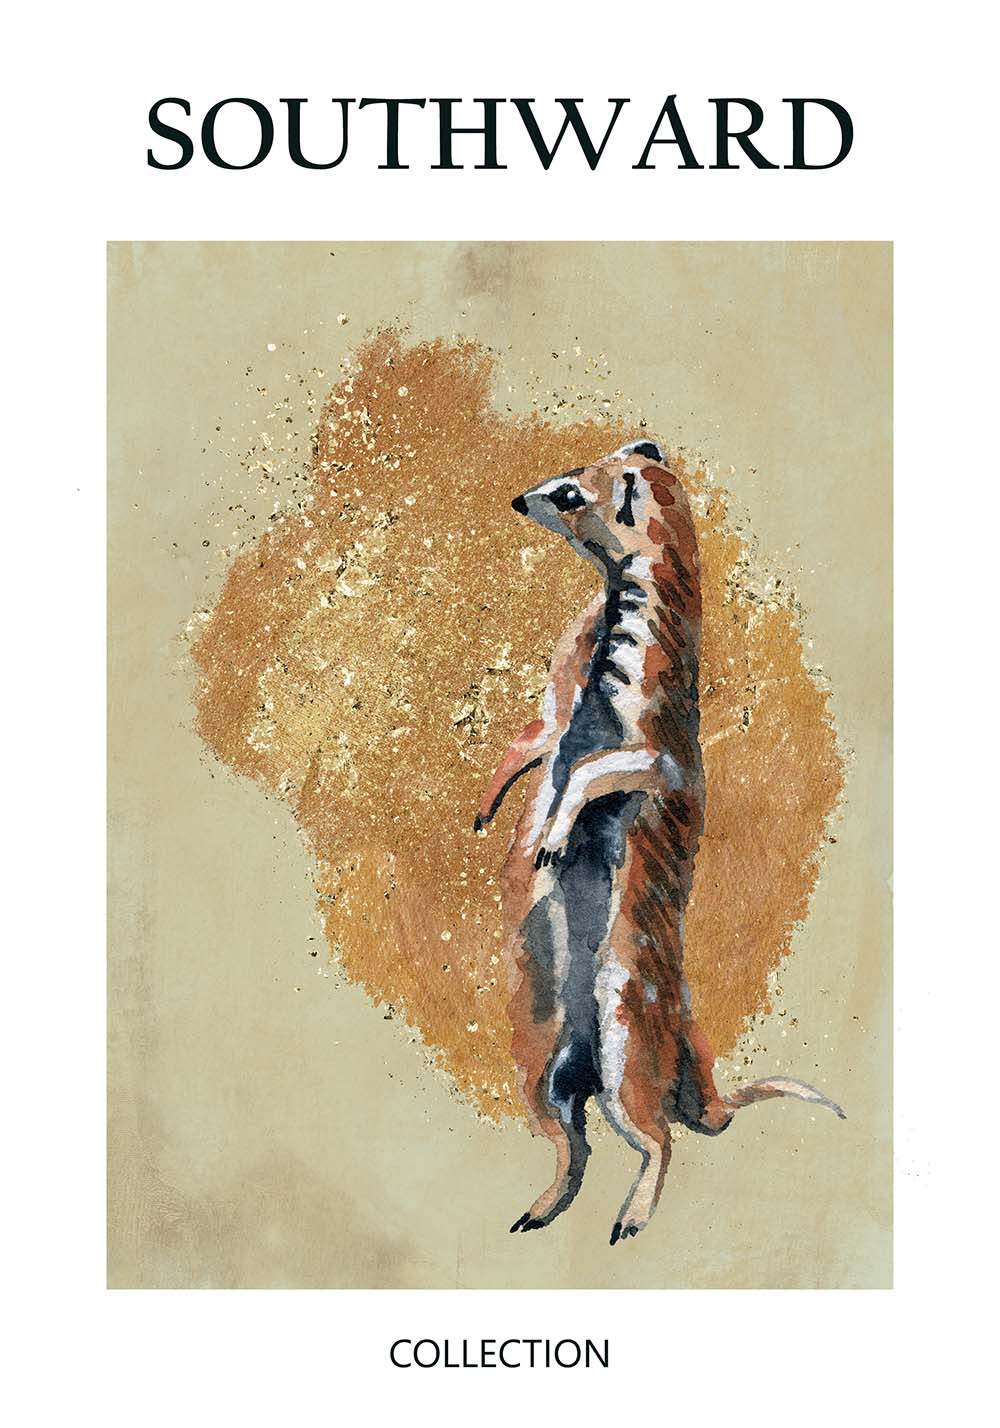 Affiche suricate